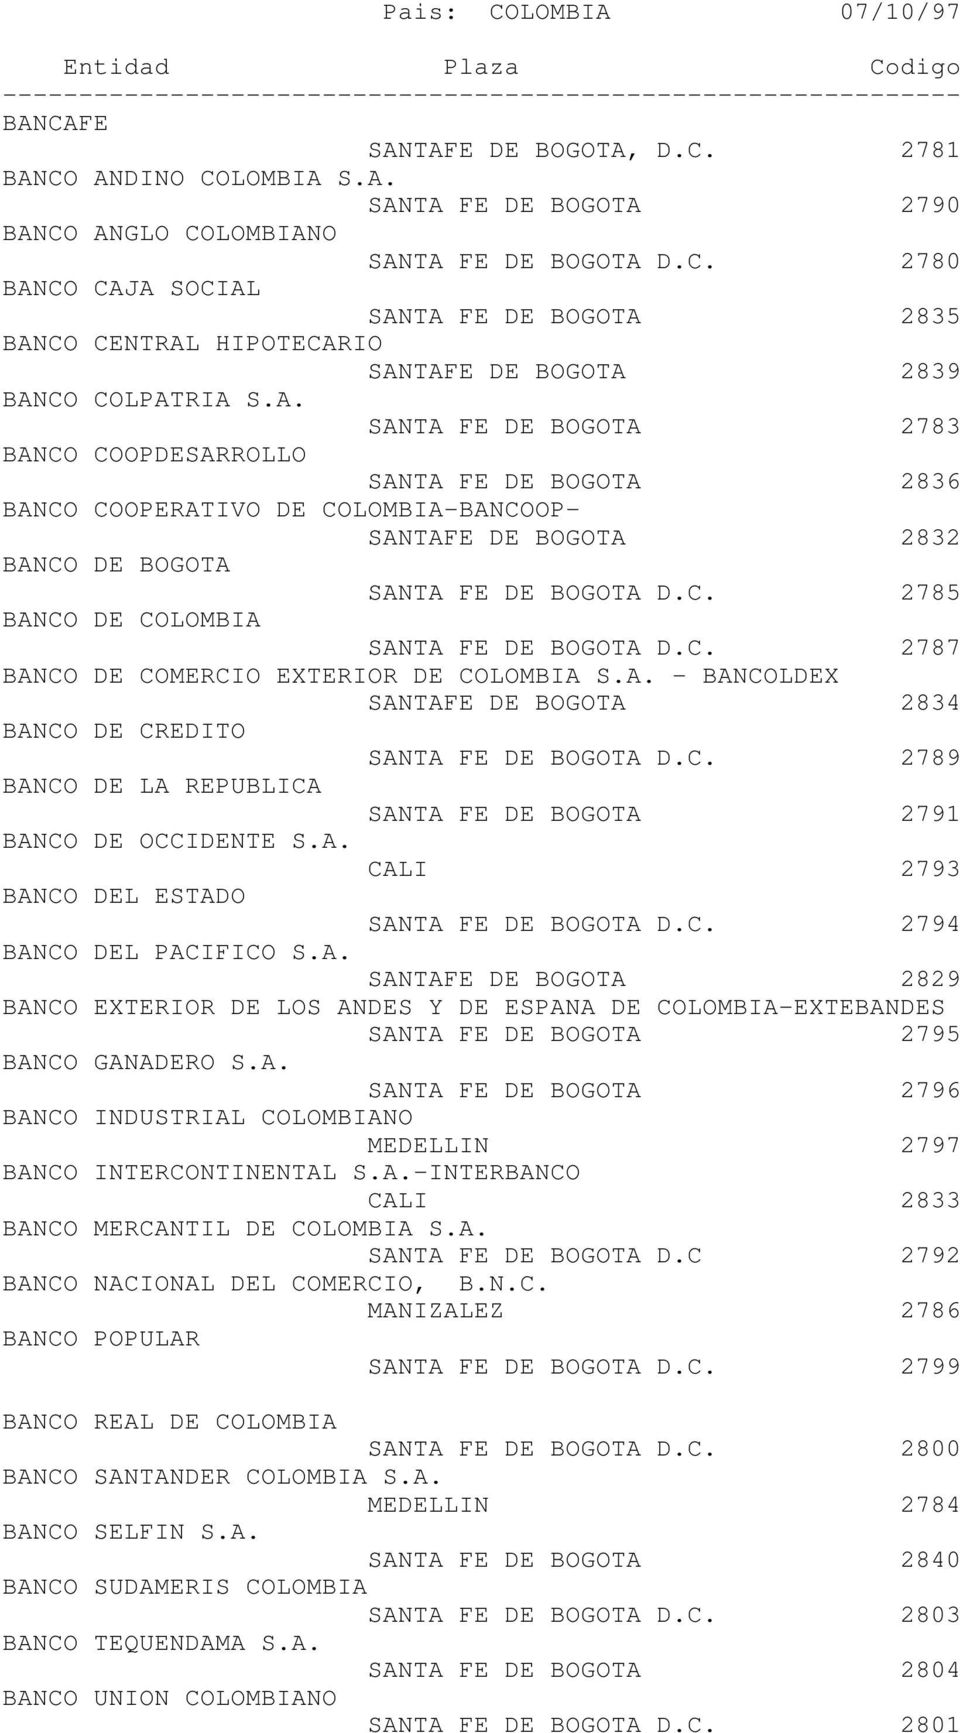 C. 2785 BANCO DE COLOMBIA SANTA FE DE BOGOTA D.C. 2787 BANCO DE COMERCIO EXTERIOR DE COLOMBIA S.A. - BANCOLDEX SANTAFE DE BOGOTA 2834 BANCO DE CREDITO SANTA FE DE BOGOTA D.C. 2789 BANCO DE LA REPUBLICA SANTA FE DE BOGOTA 2791 BANCO DE OCCIDENTE S.